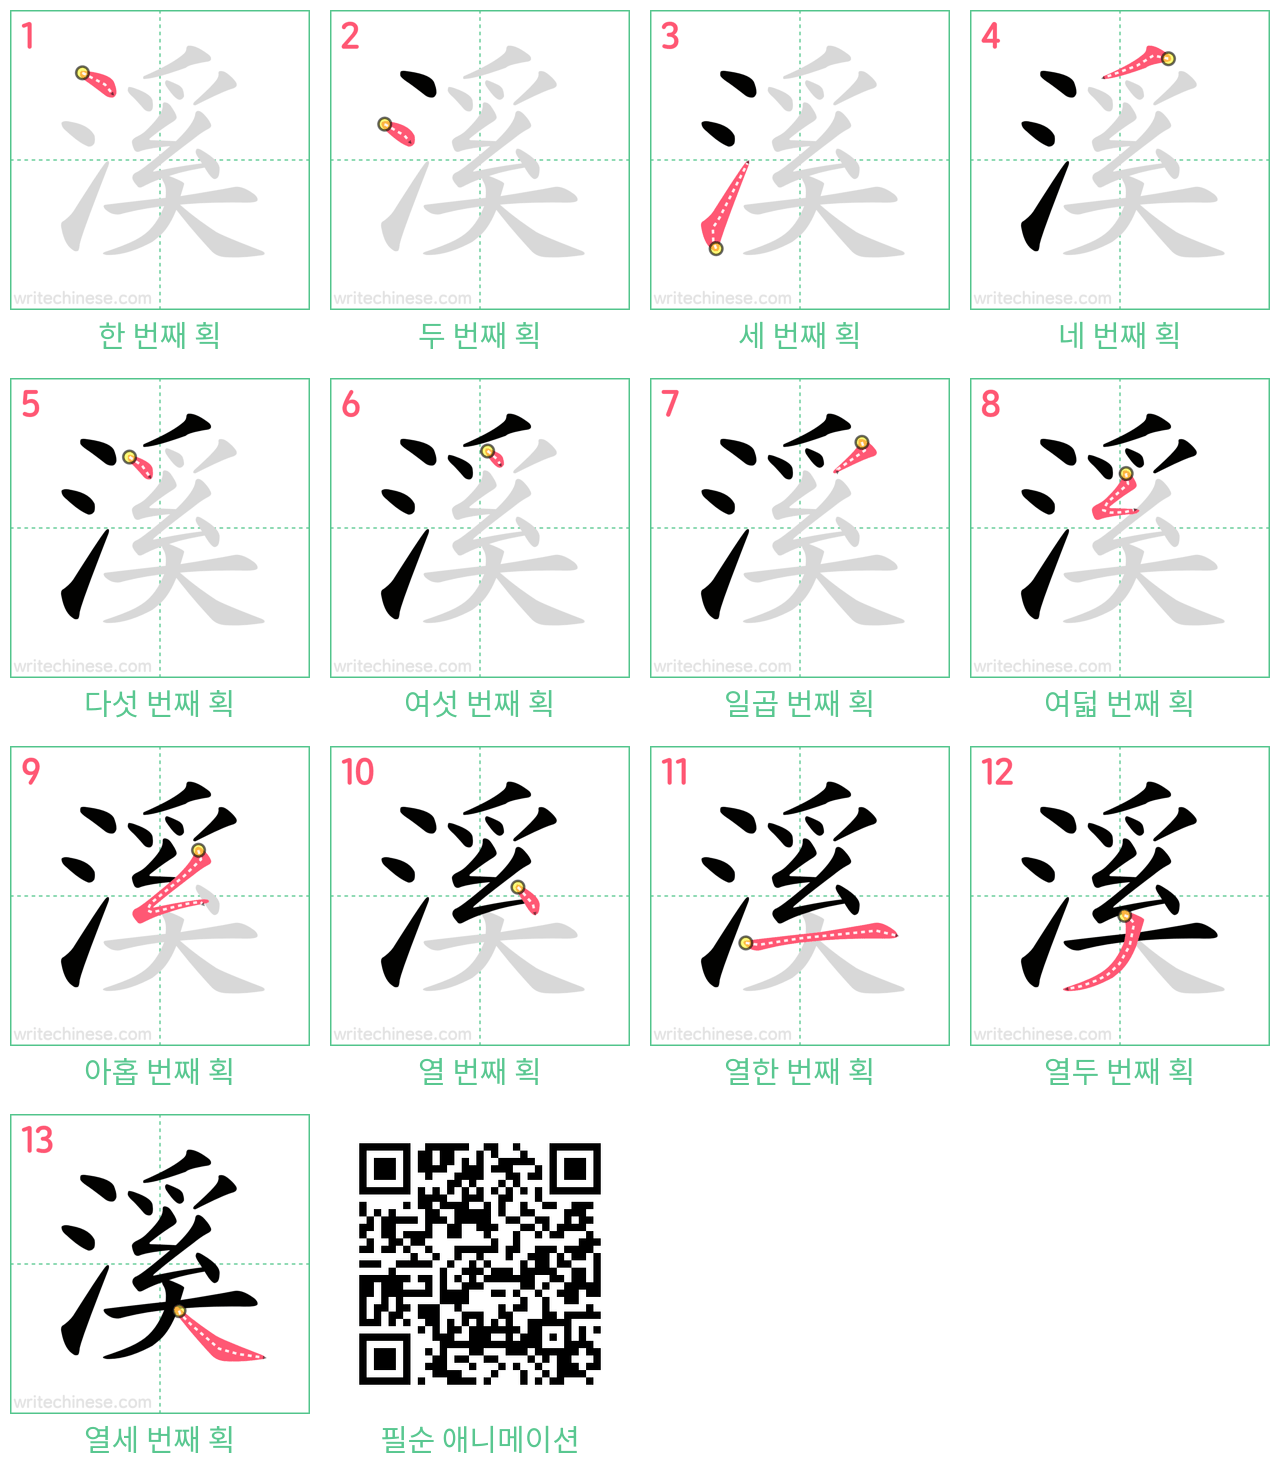 溪 step-by-step stroke order diagrams